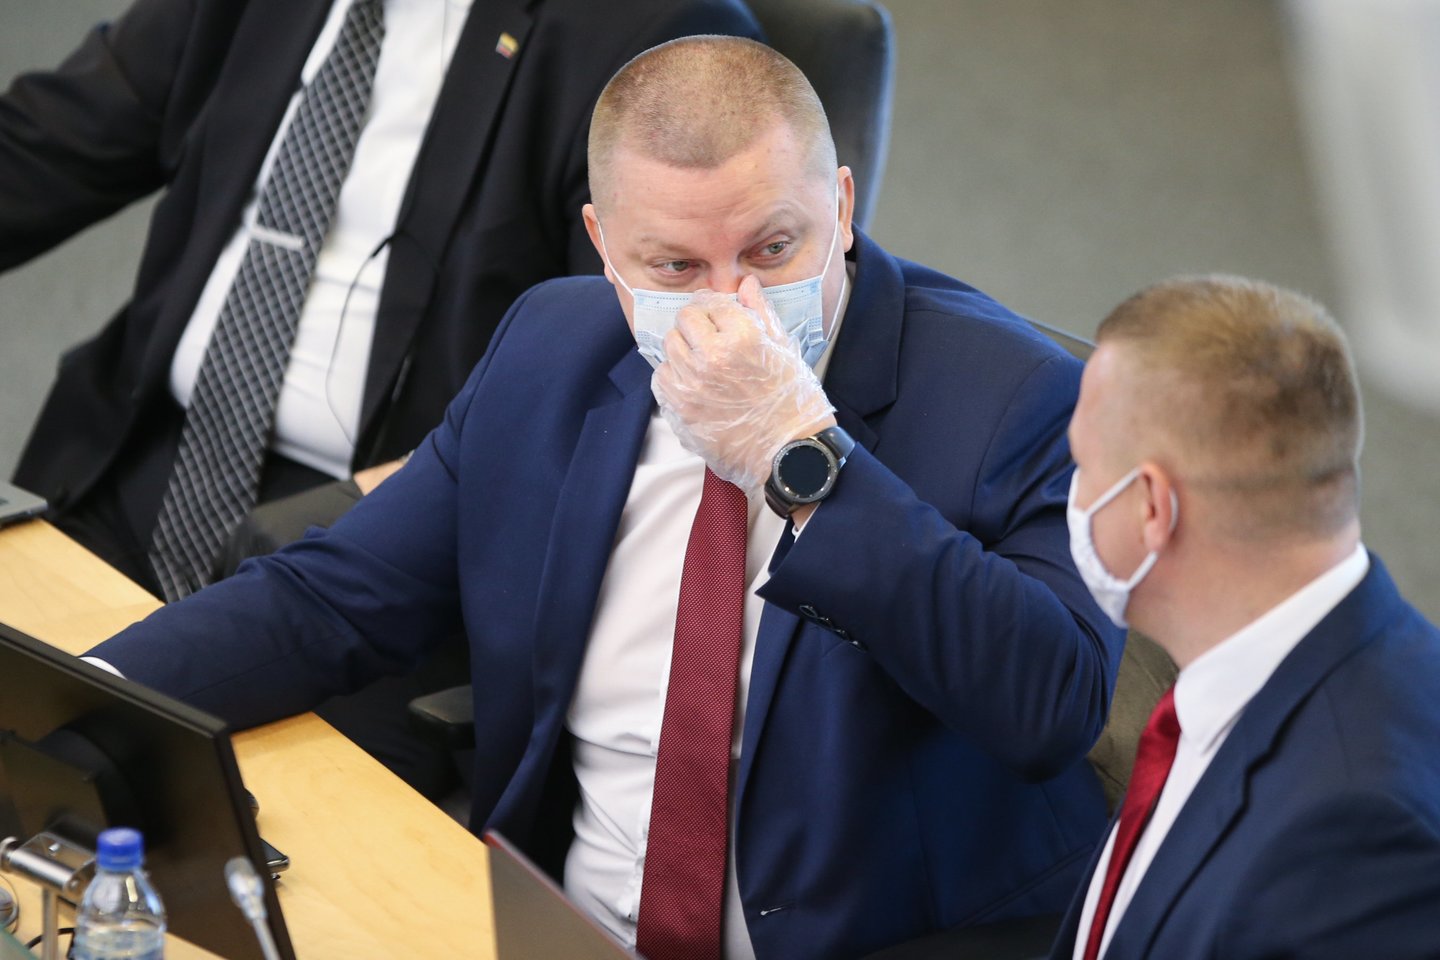 K.Smirnovas pernai nebuvo perrinktas į Seimą.<br>R.Danisevičiaus nuotr.